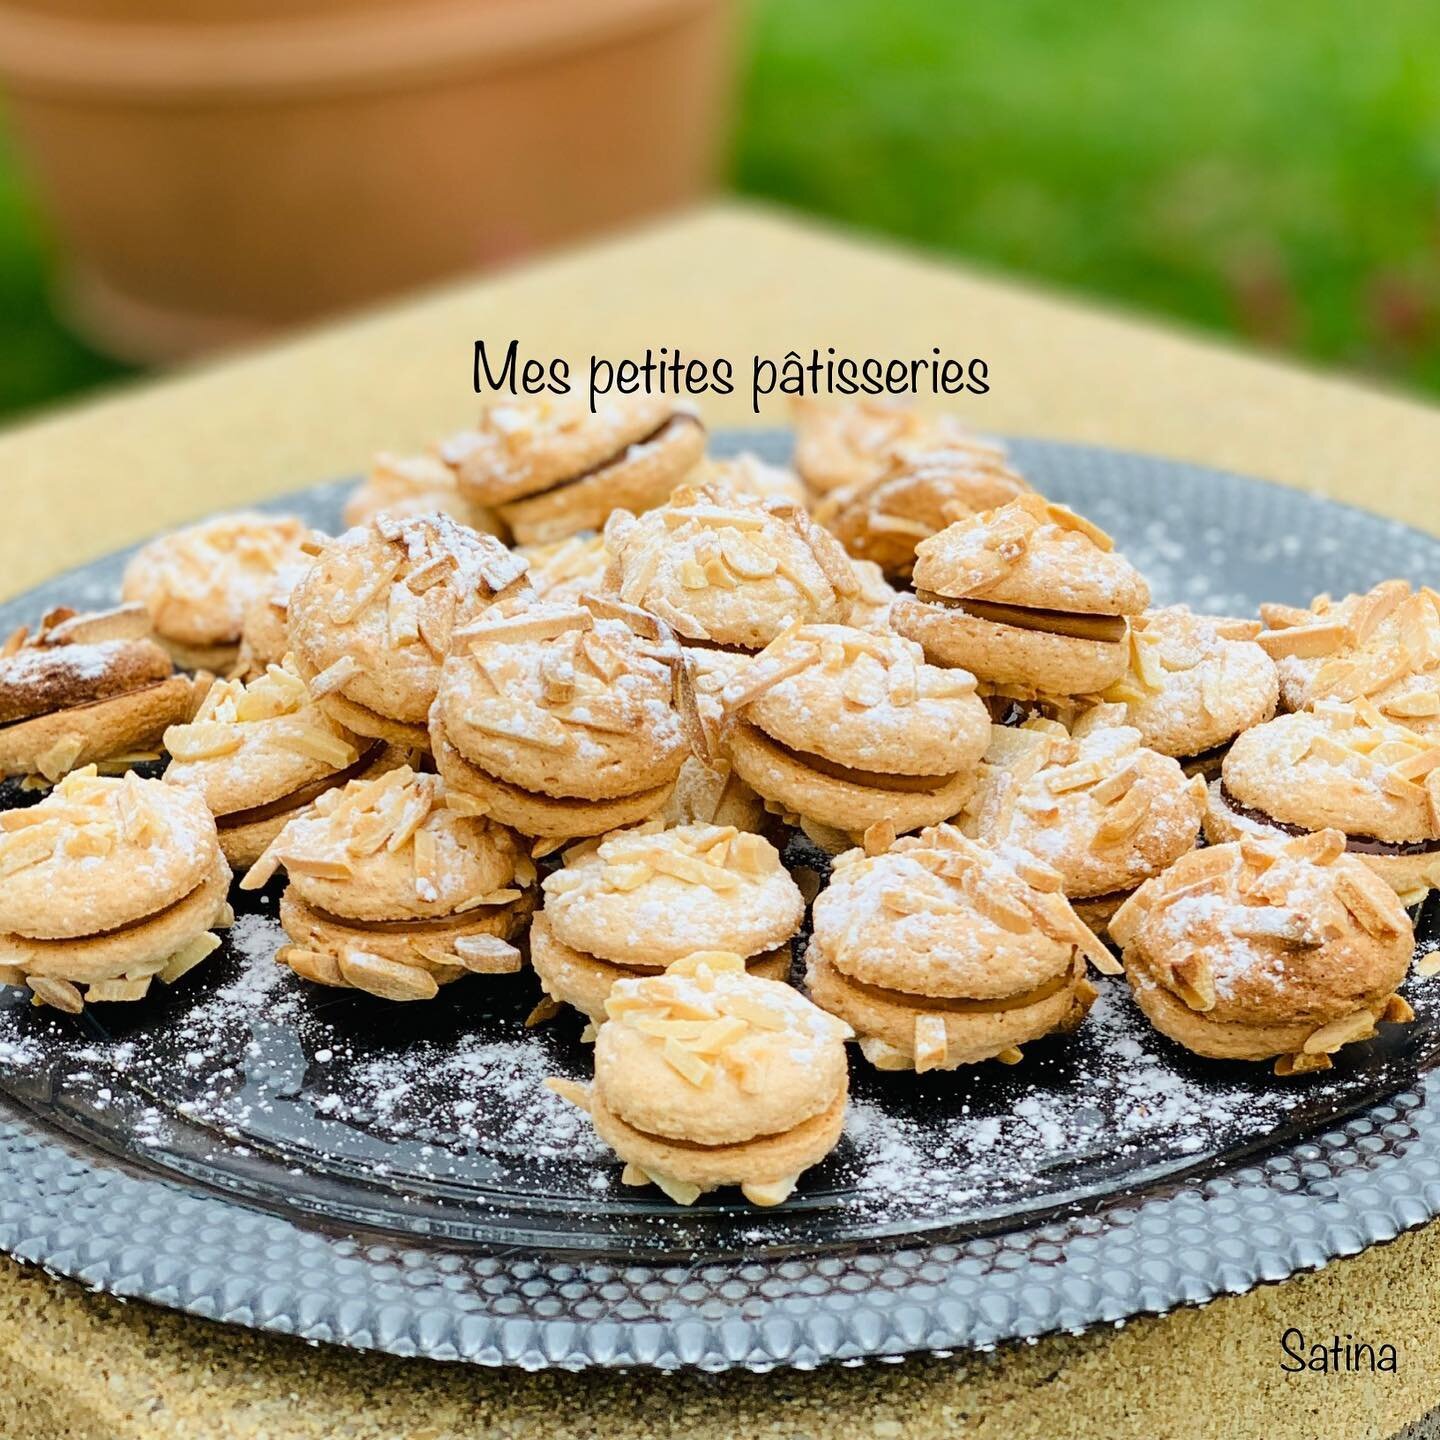 Petits biscuits éponges aux amandes (Copy)